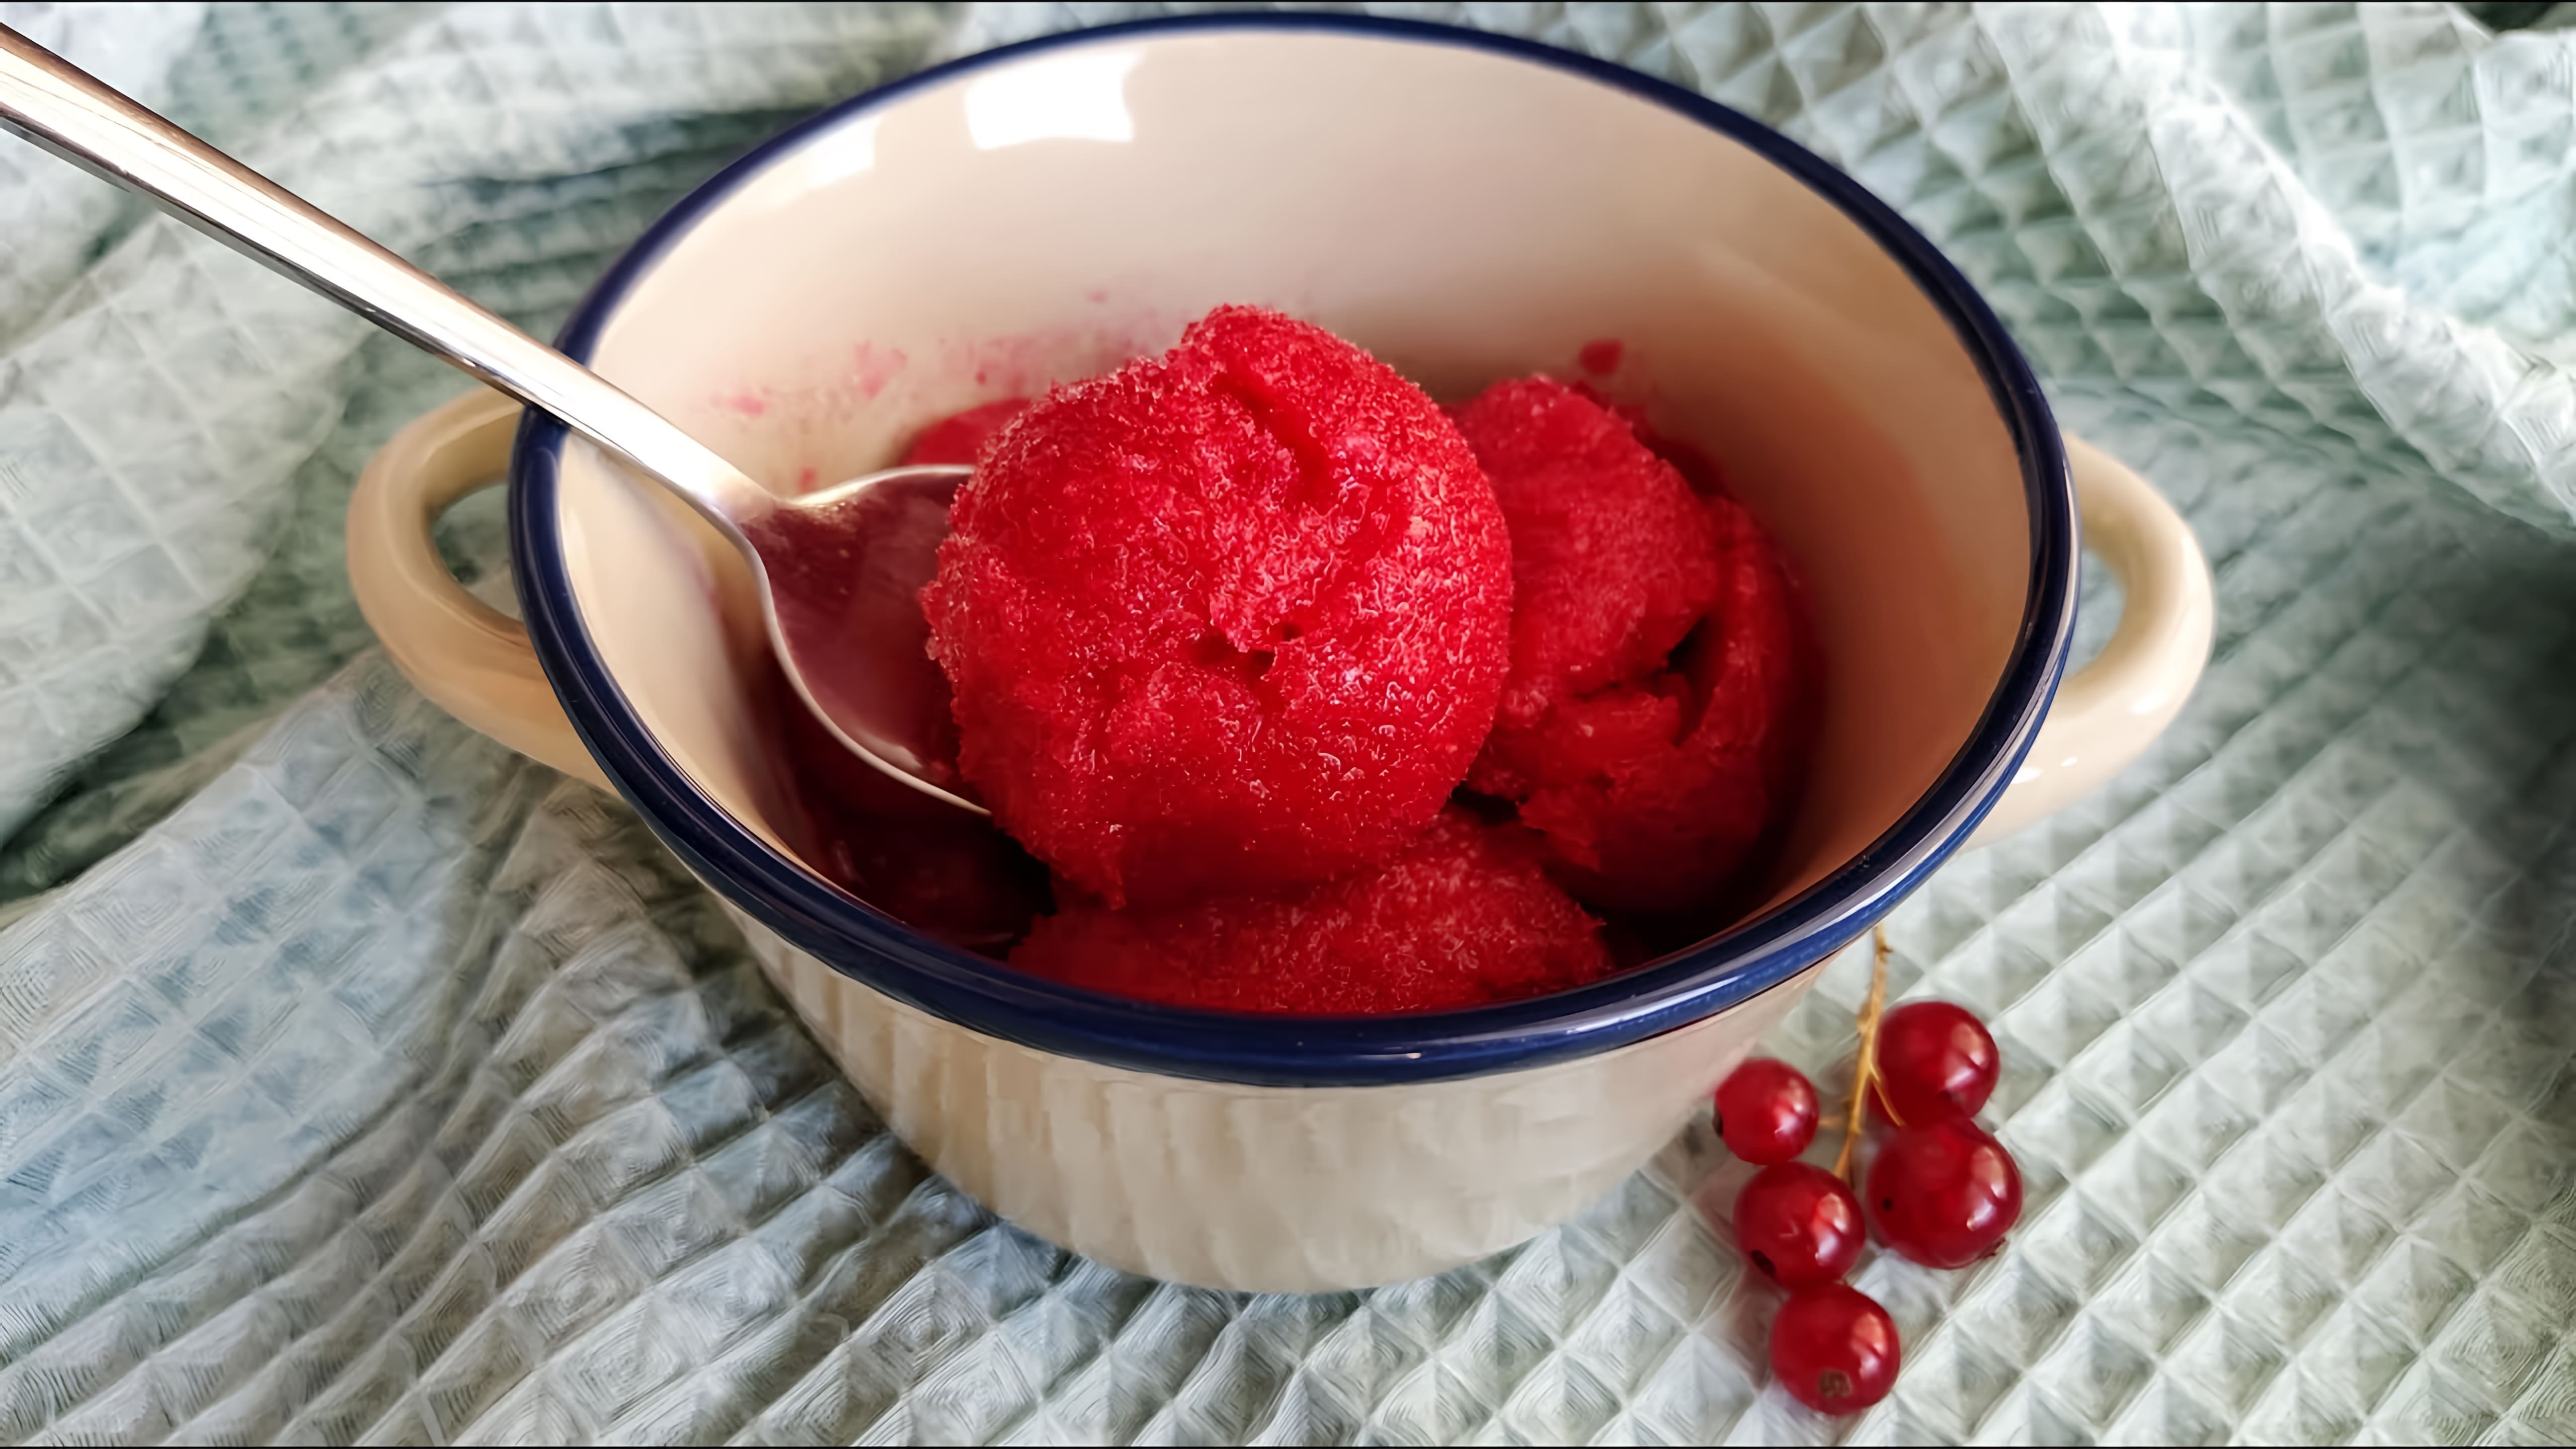 Сорбе из красной смородины - это вкусное и полезное ягодное мороженое, которое можно приготовить в домашних условиях